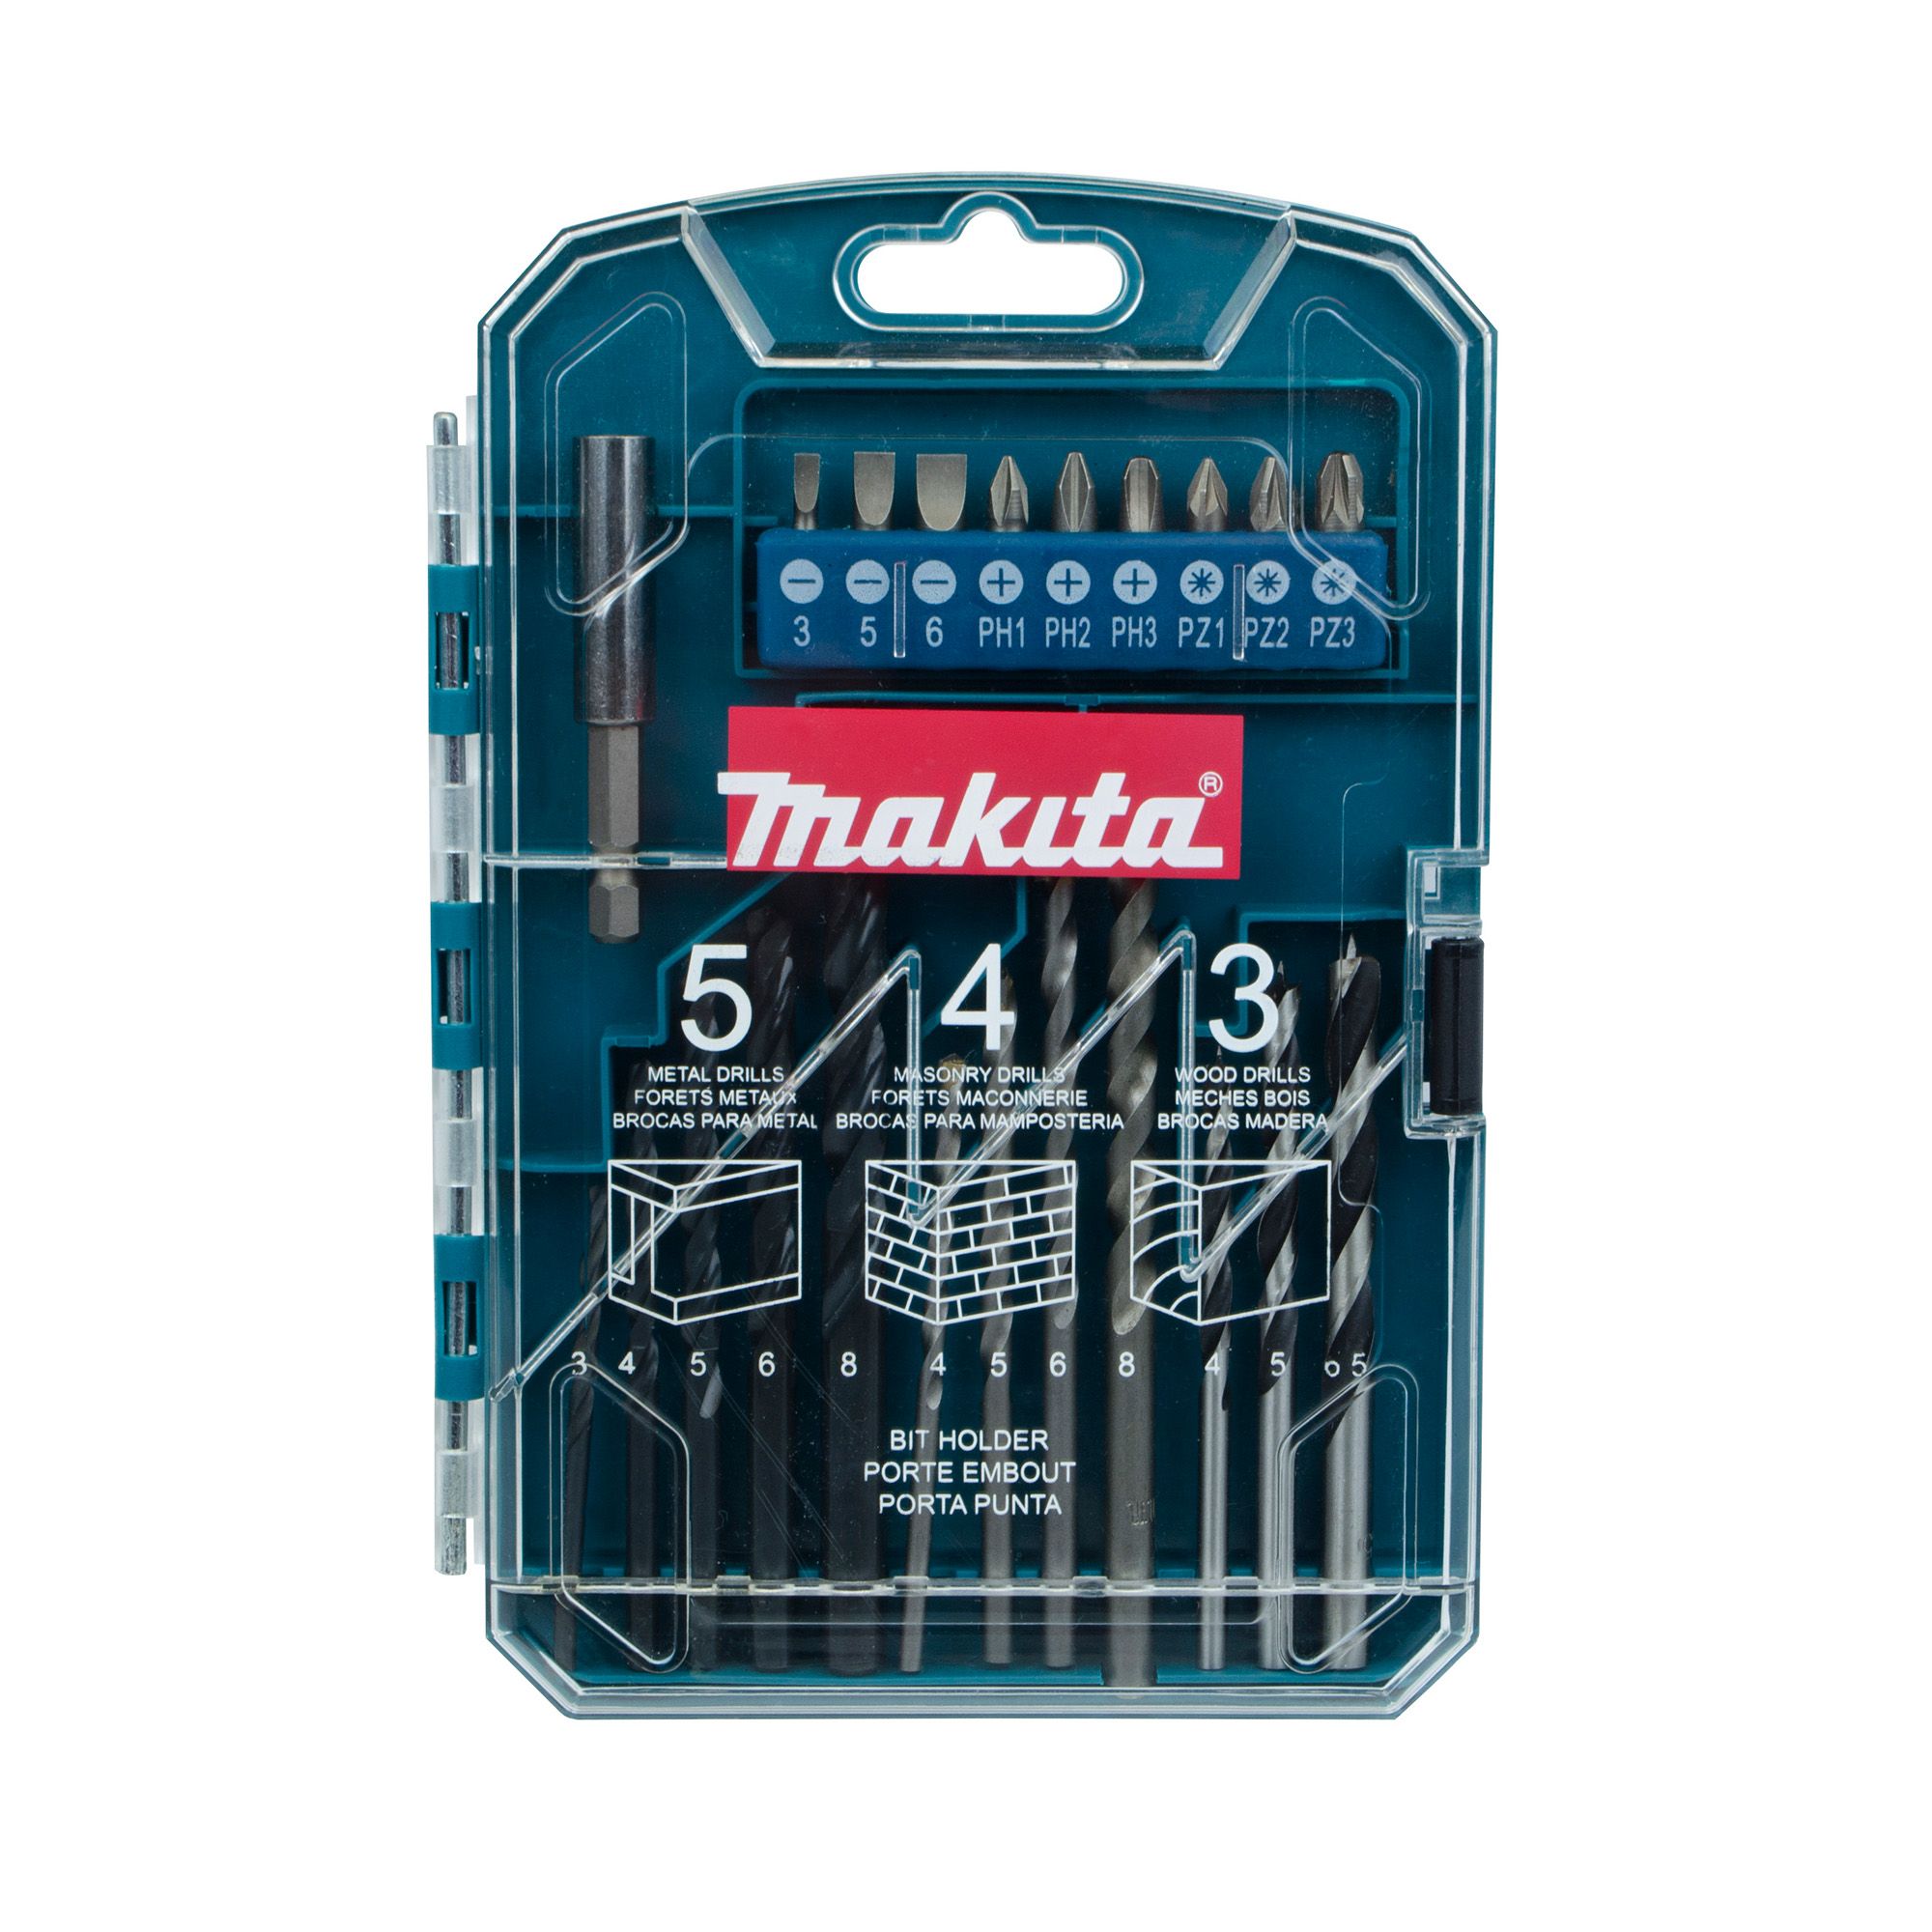 Makita 22 piece Mixed Drill & screwdriver bit set